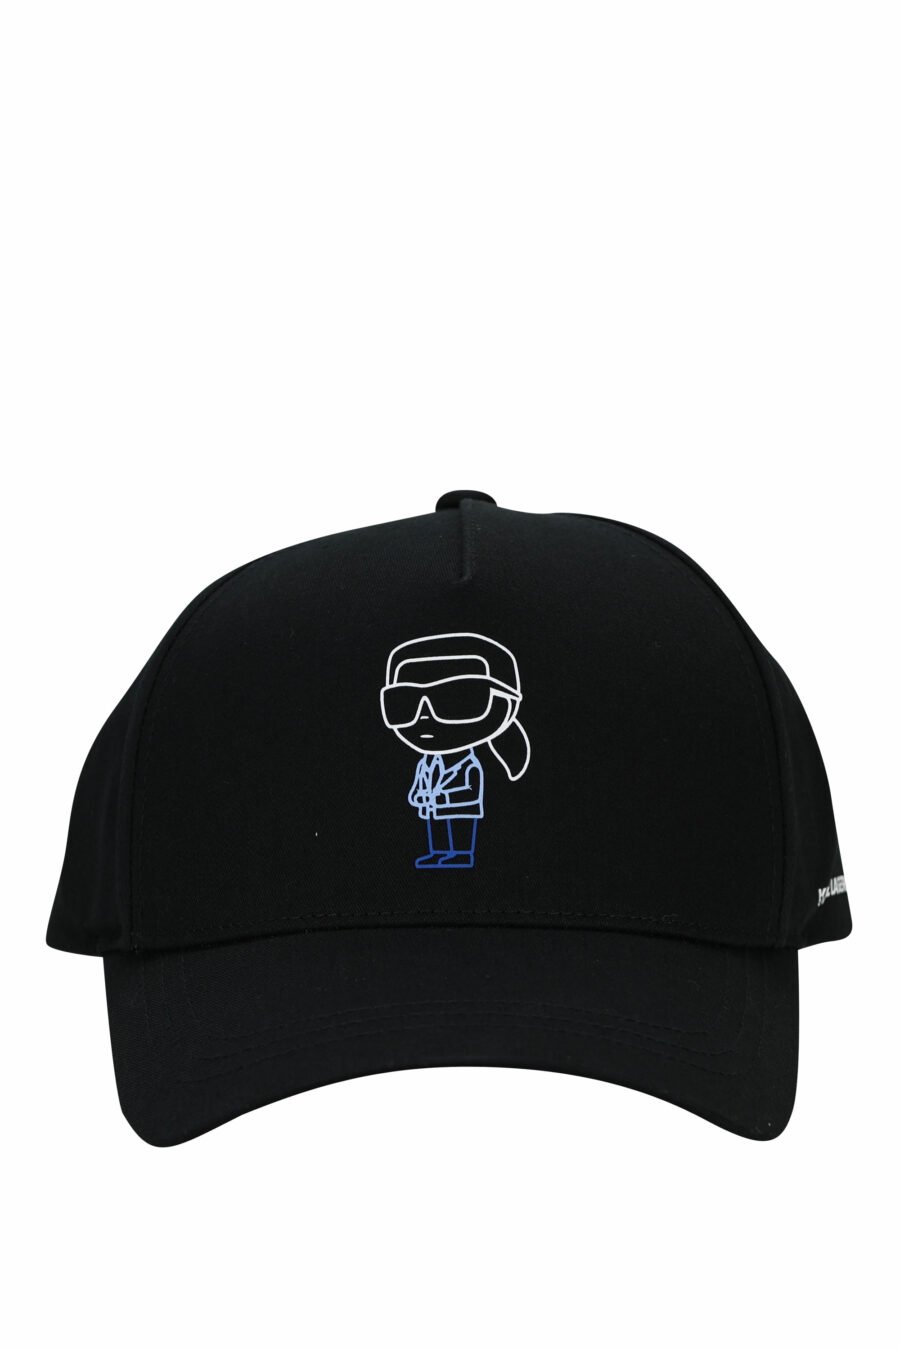 Gorra negra con logo "karl" azul - 4062226701709